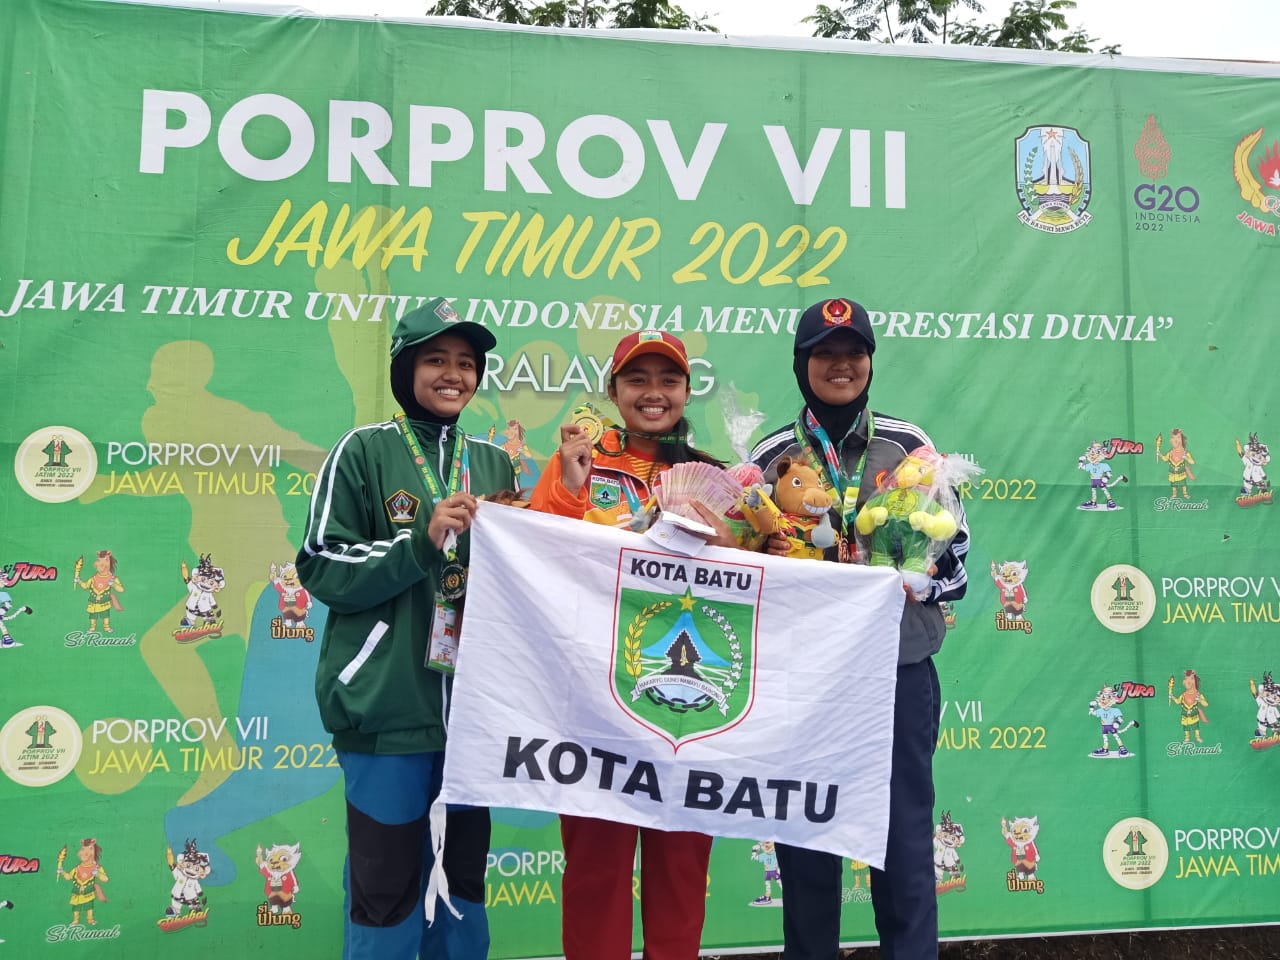 Atlet Paralayang Kota Batu kembali mendulang prestasi dengan peroleh 2 medali emas dan 1 perak di Porprov Jatim VII 2022.